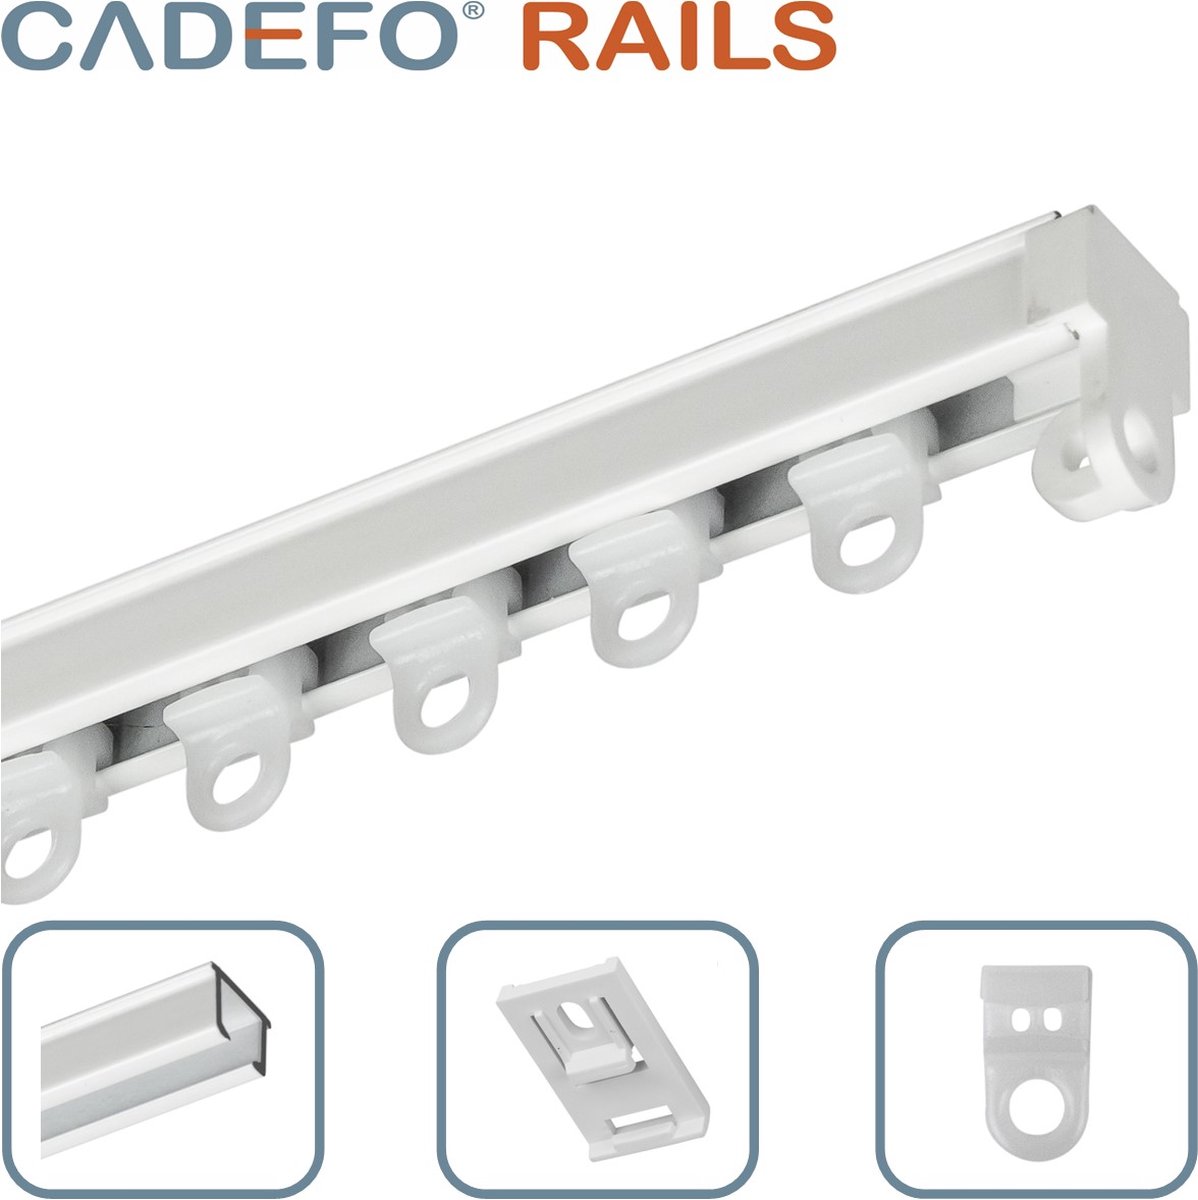 CADEFO RAILS (551 - 600 cm) Gordijnrails - Compleet op maat! - UIT 1 STUK - Leverbaar tot 6 meter - Plafondbevestiging - Lengte 570 cm